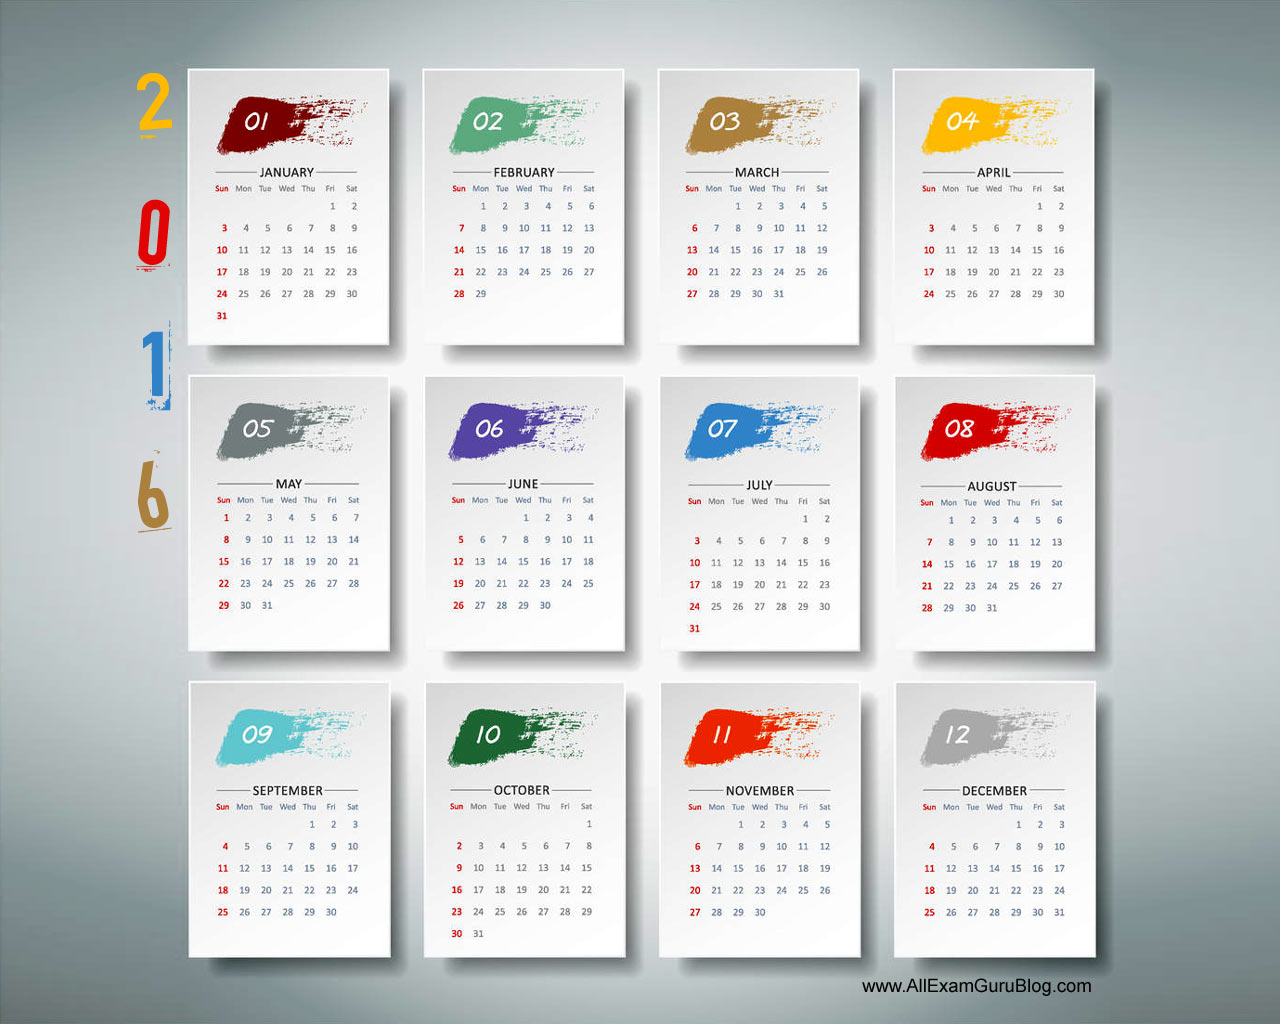 2016 Year Calendar Wallpaper Download 2016 Calendar by Month 1280x1024